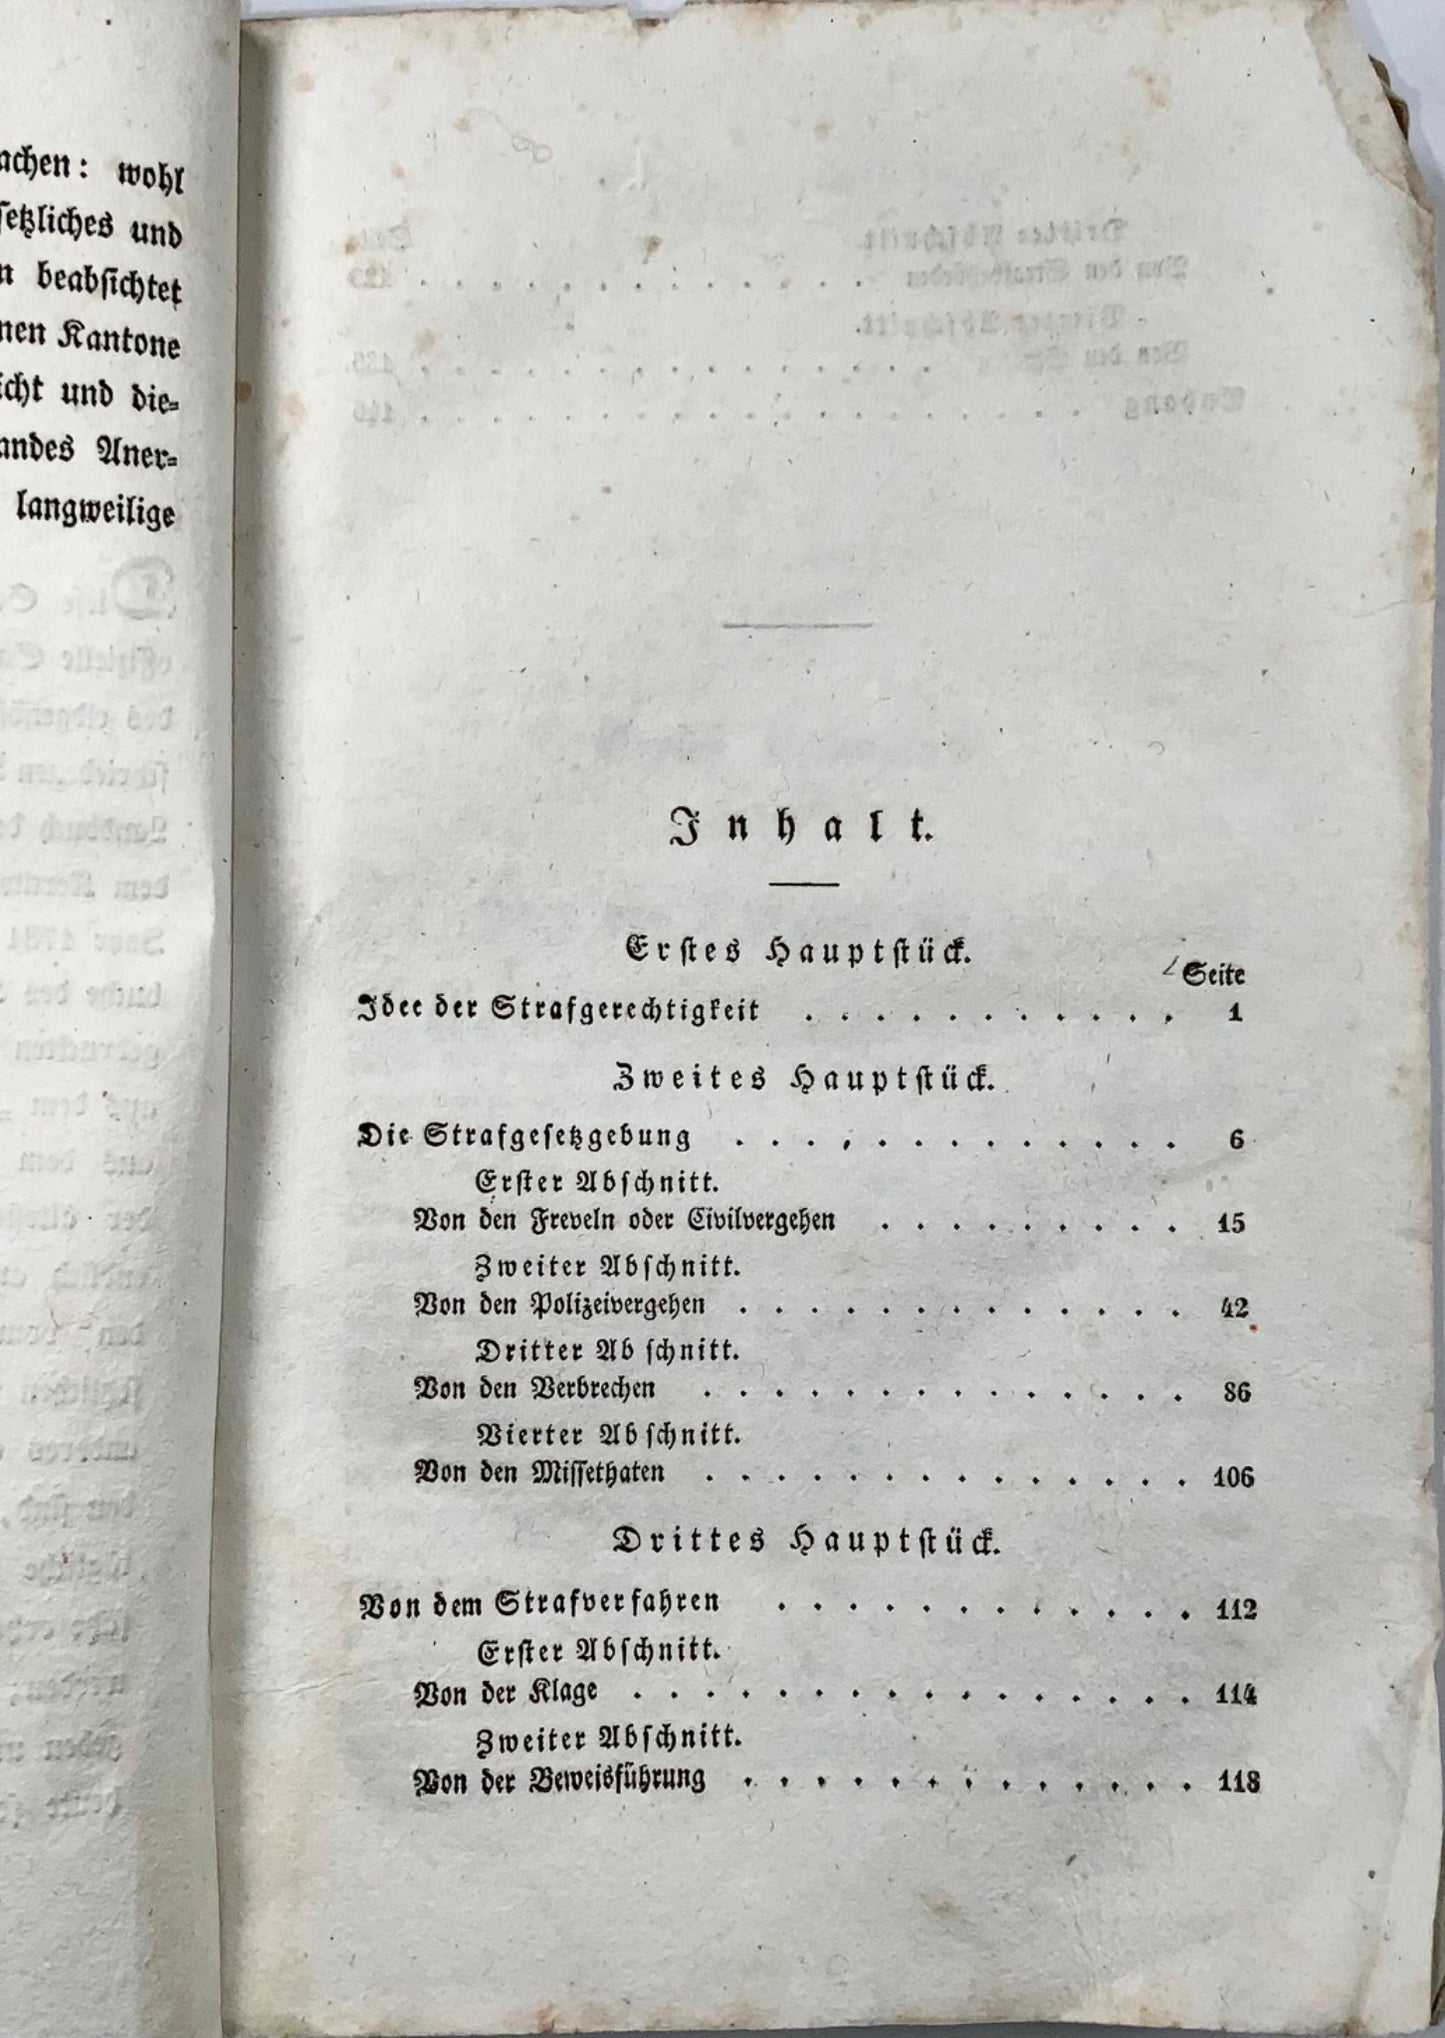 1833 Siegwart-Muller, Diritto penale della Svizzera centrale, libro